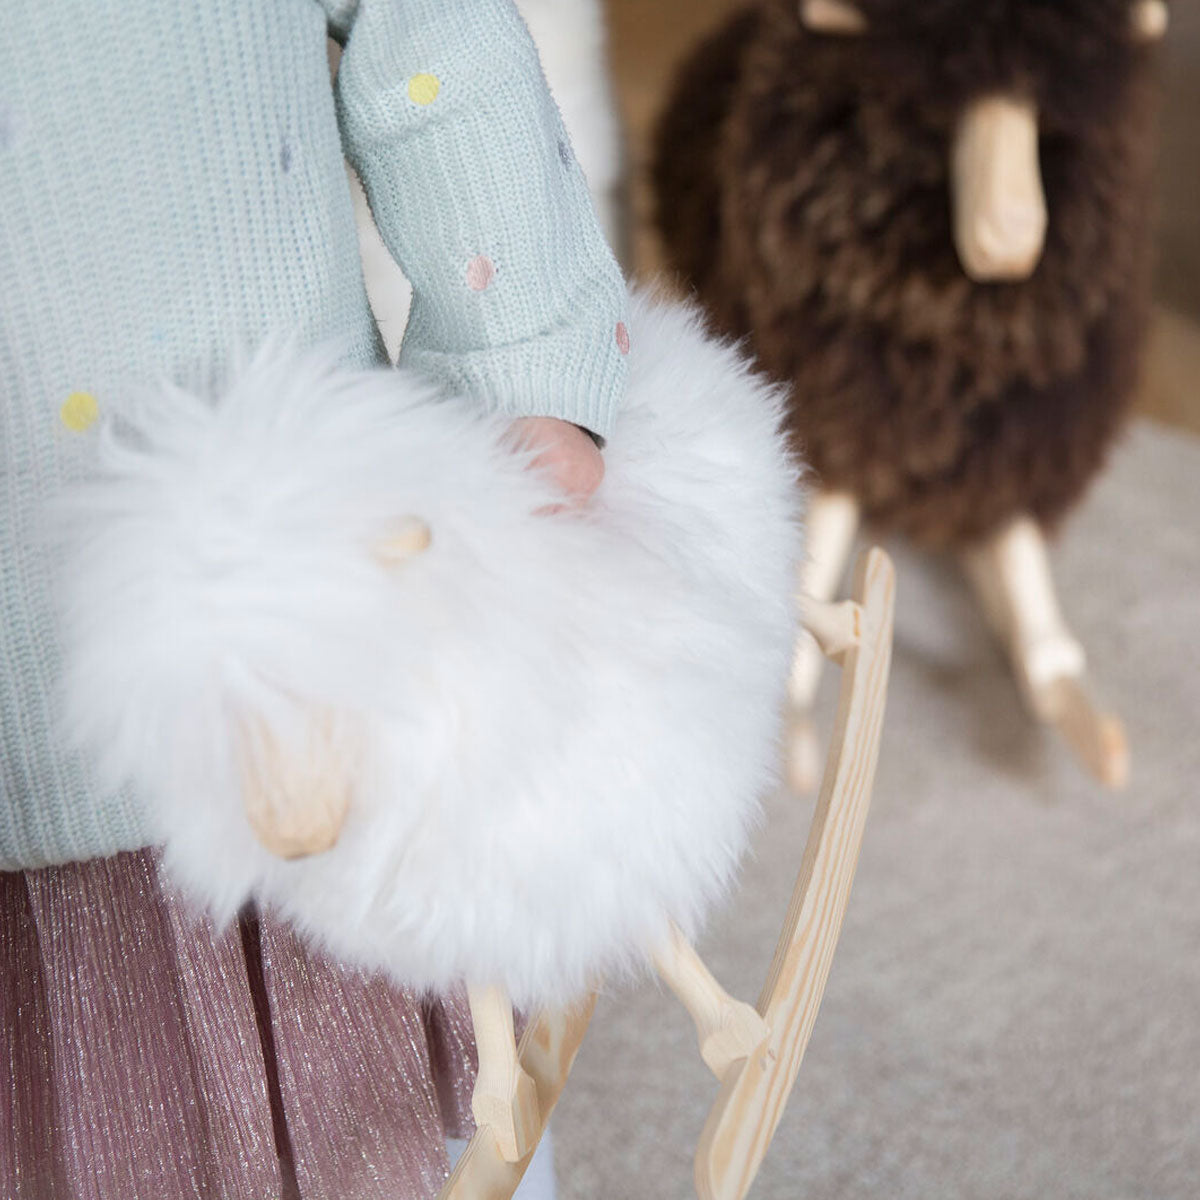 The Rocking Lamb │ Povl Kjer Design │ Made in Denmark │ Natural White Long Wool │ Small